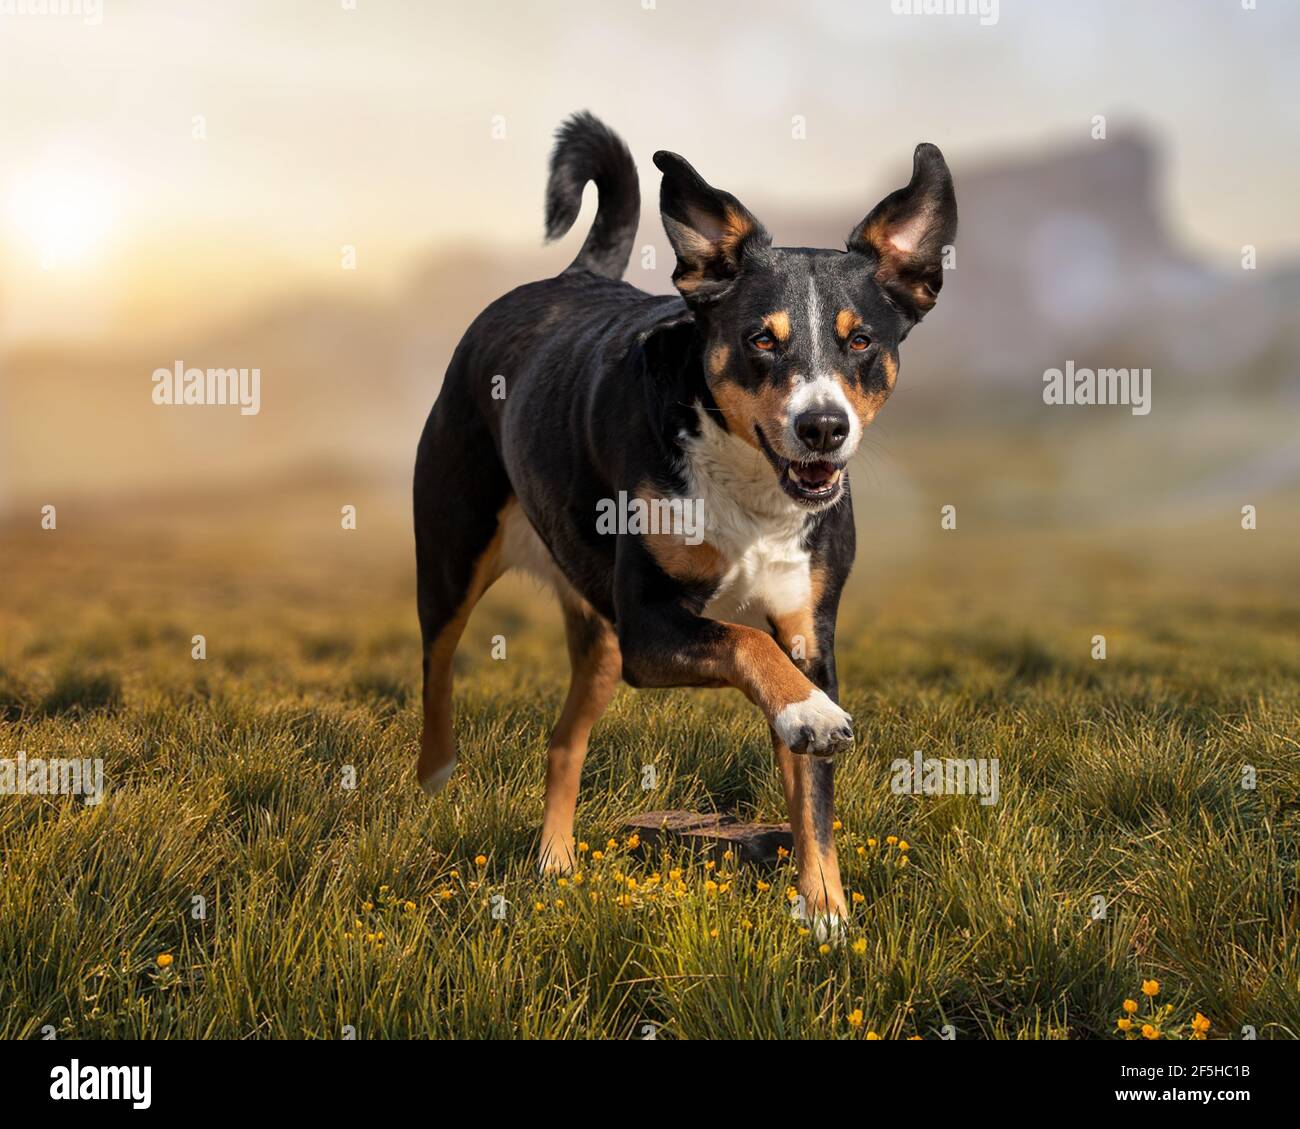 Cane da corsa su erba, appenzeller sennenhund Foto Stock